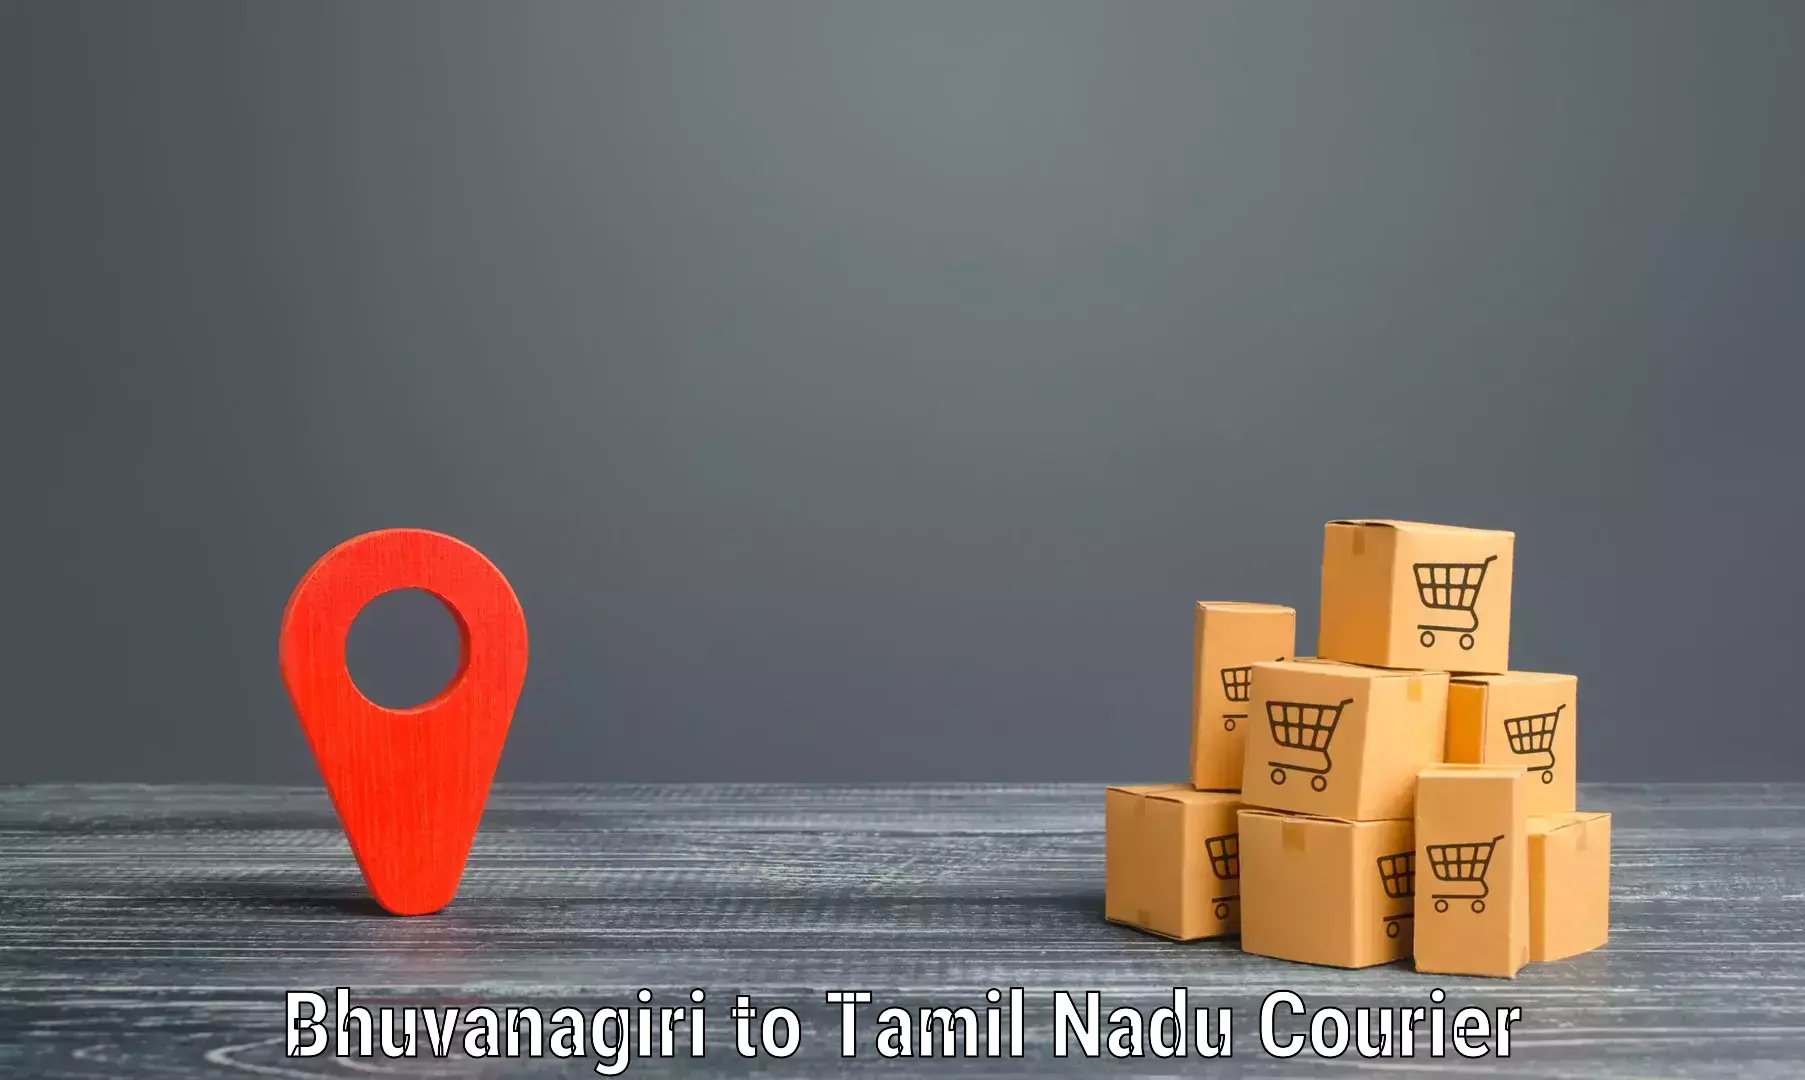 Courier service booking Bhuvanagiri to Ramanathapuram